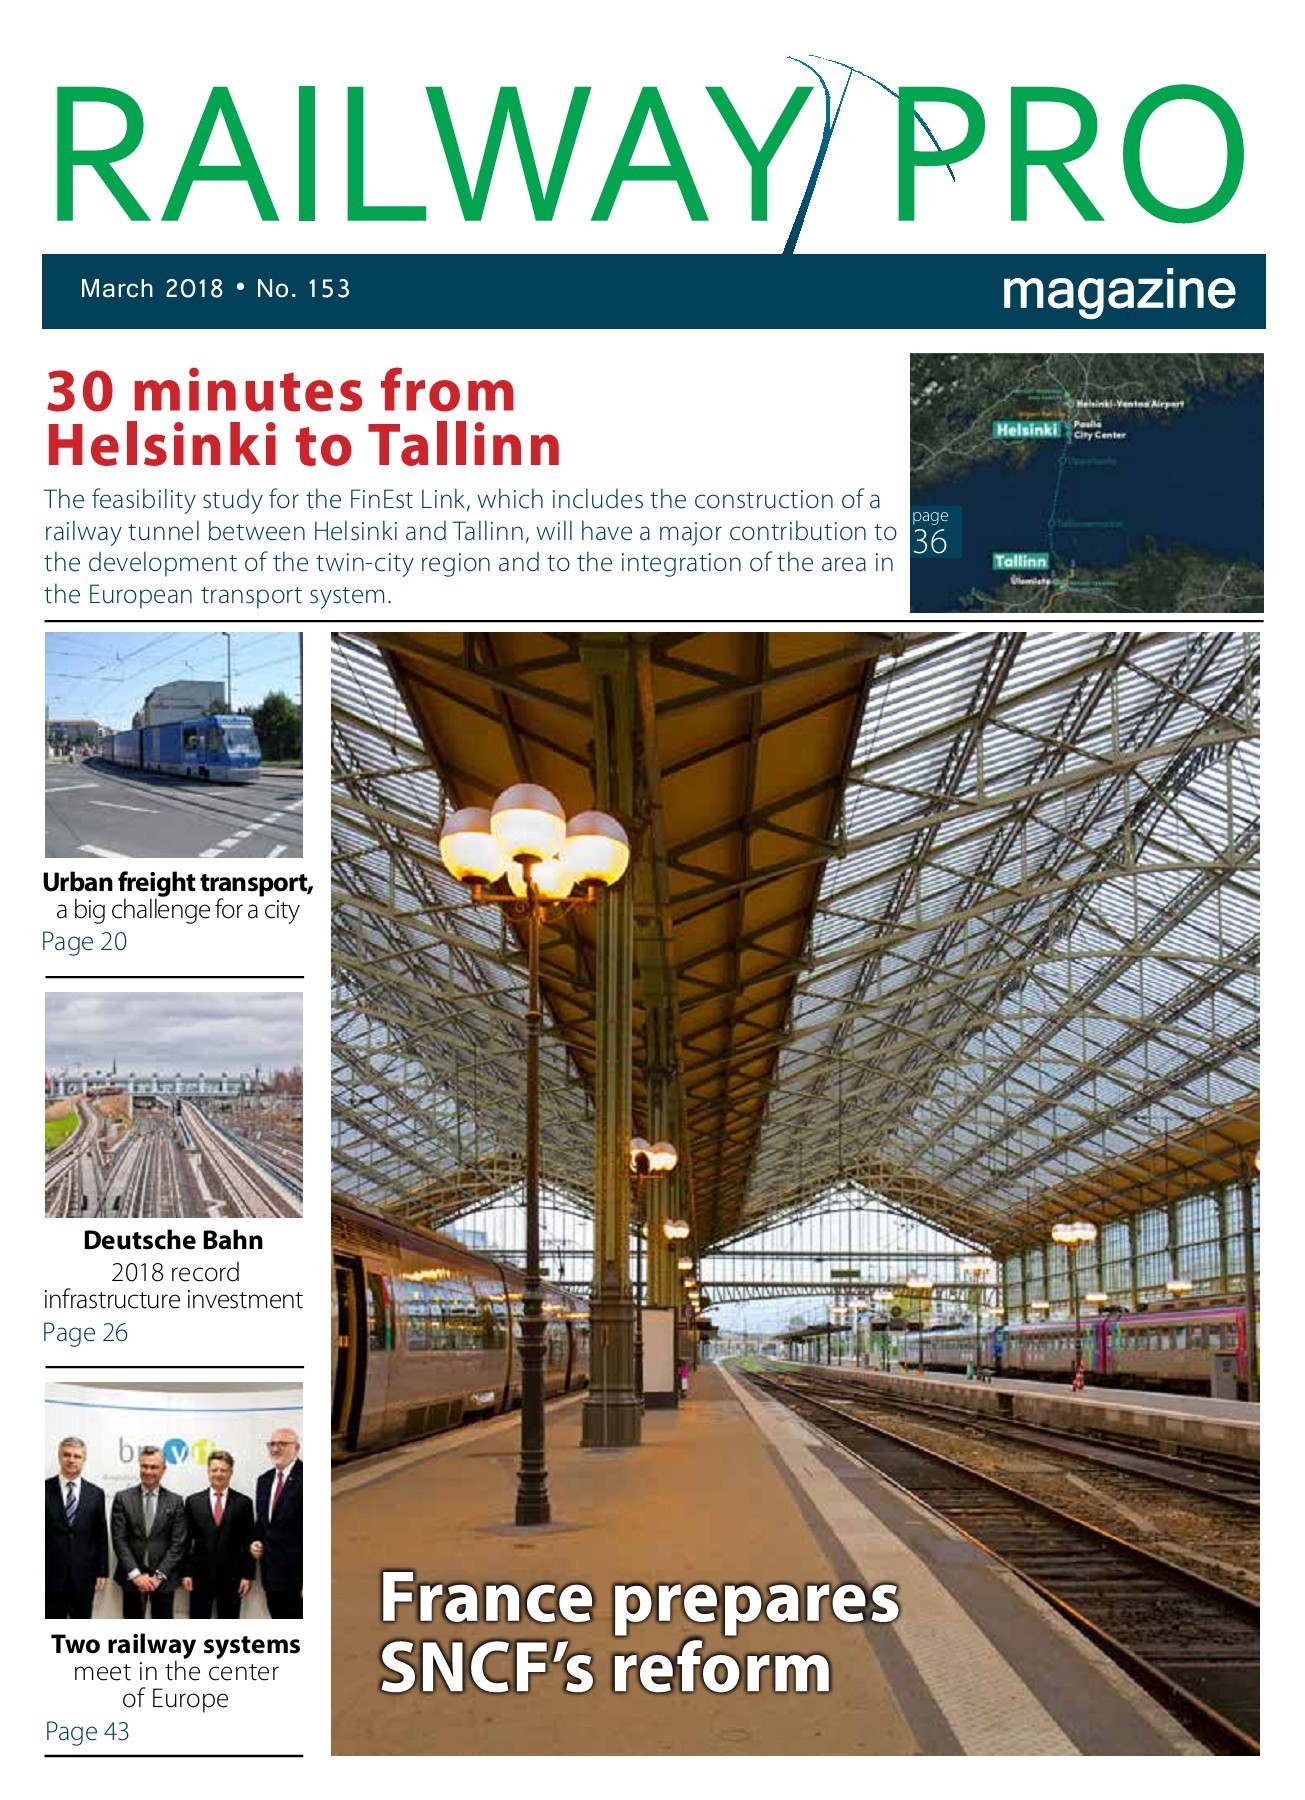 Hotel Garten Bonn Luxus Railway Pro Magazine March Pages 1 50 Text Version